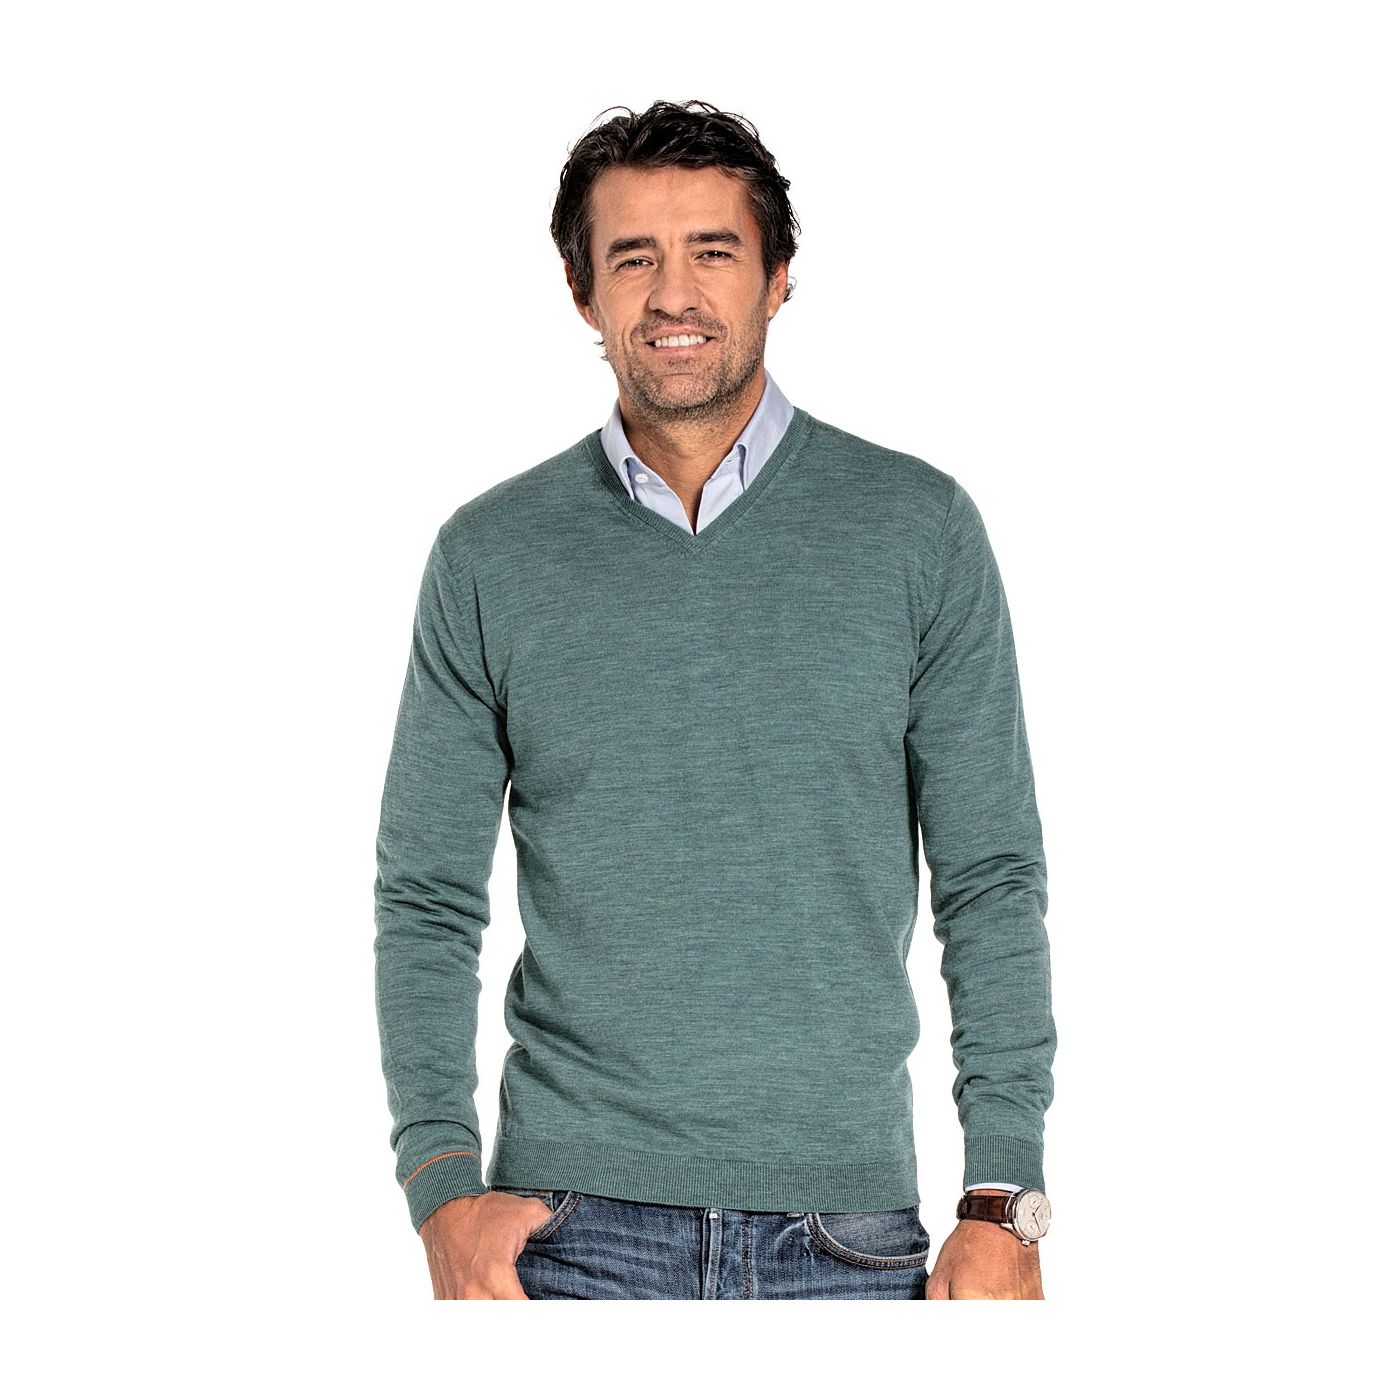 V-Neck sweater for men made of Merino wool in Light green